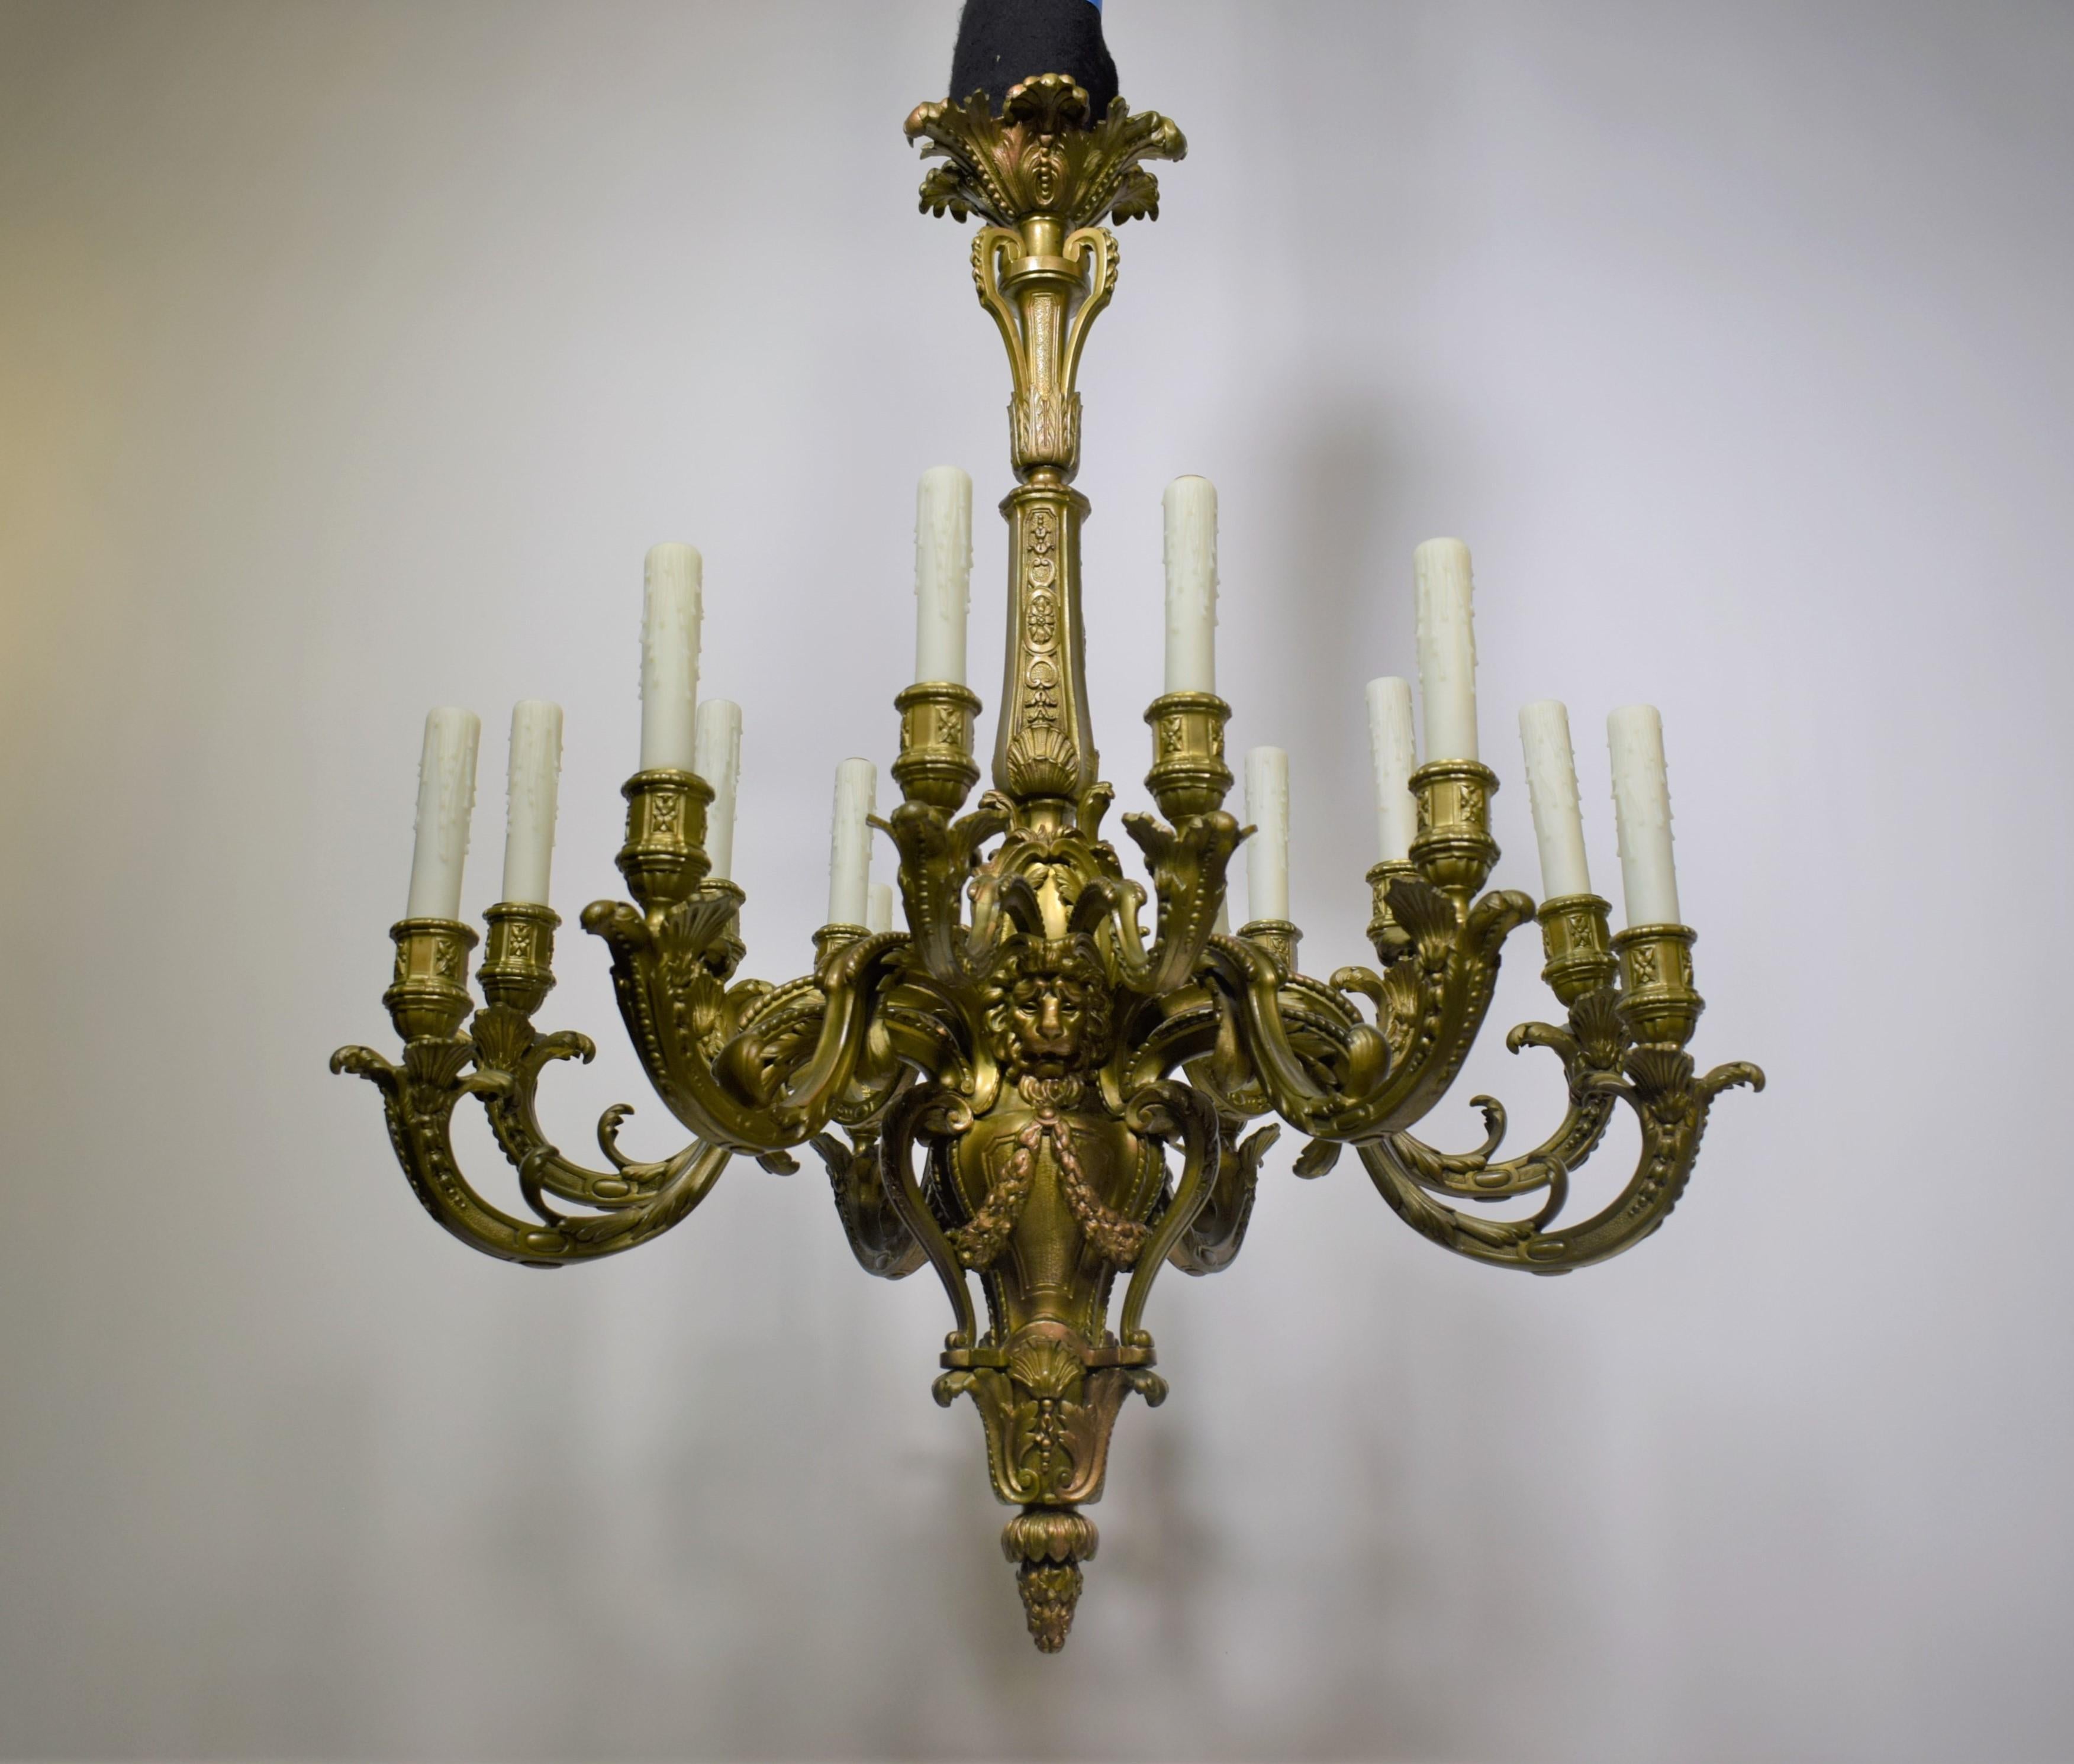 Lustre de style Régence en bronze doré représentant des masques de lion. France, datant d'environ 1900.
16 lumières
Dimensions : hauteur 39